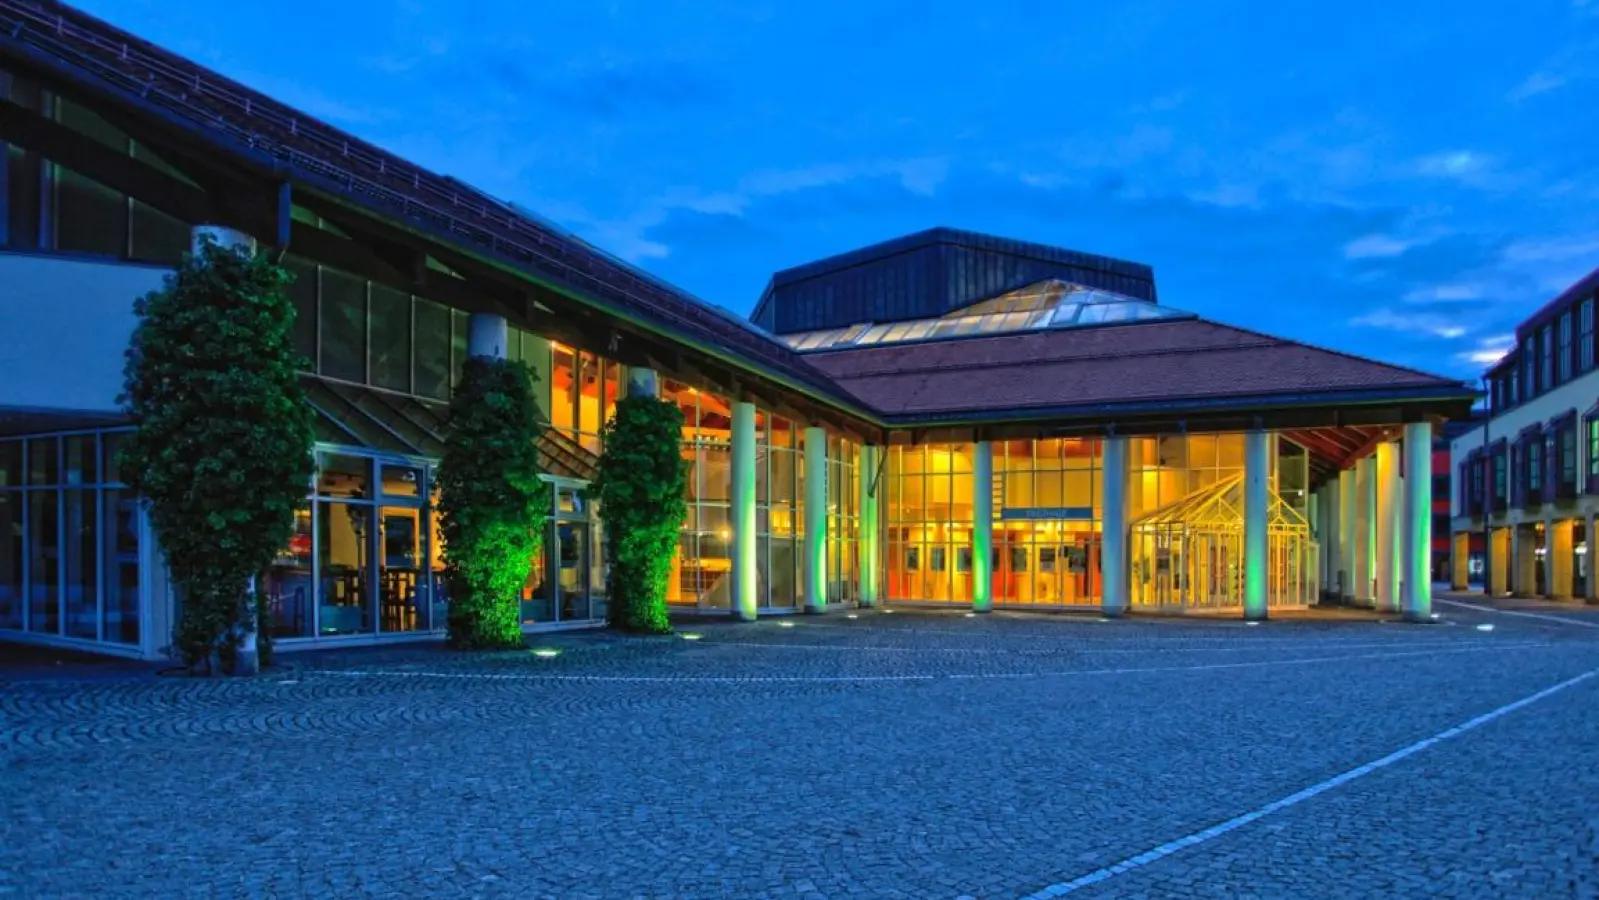 Die Stadthalle Erding präsentiert zum ersten Mal nach der Pandemie-Pause die populäre Weinmesse Vinland. (Foto: ar/www.stadthalle-erding.de)